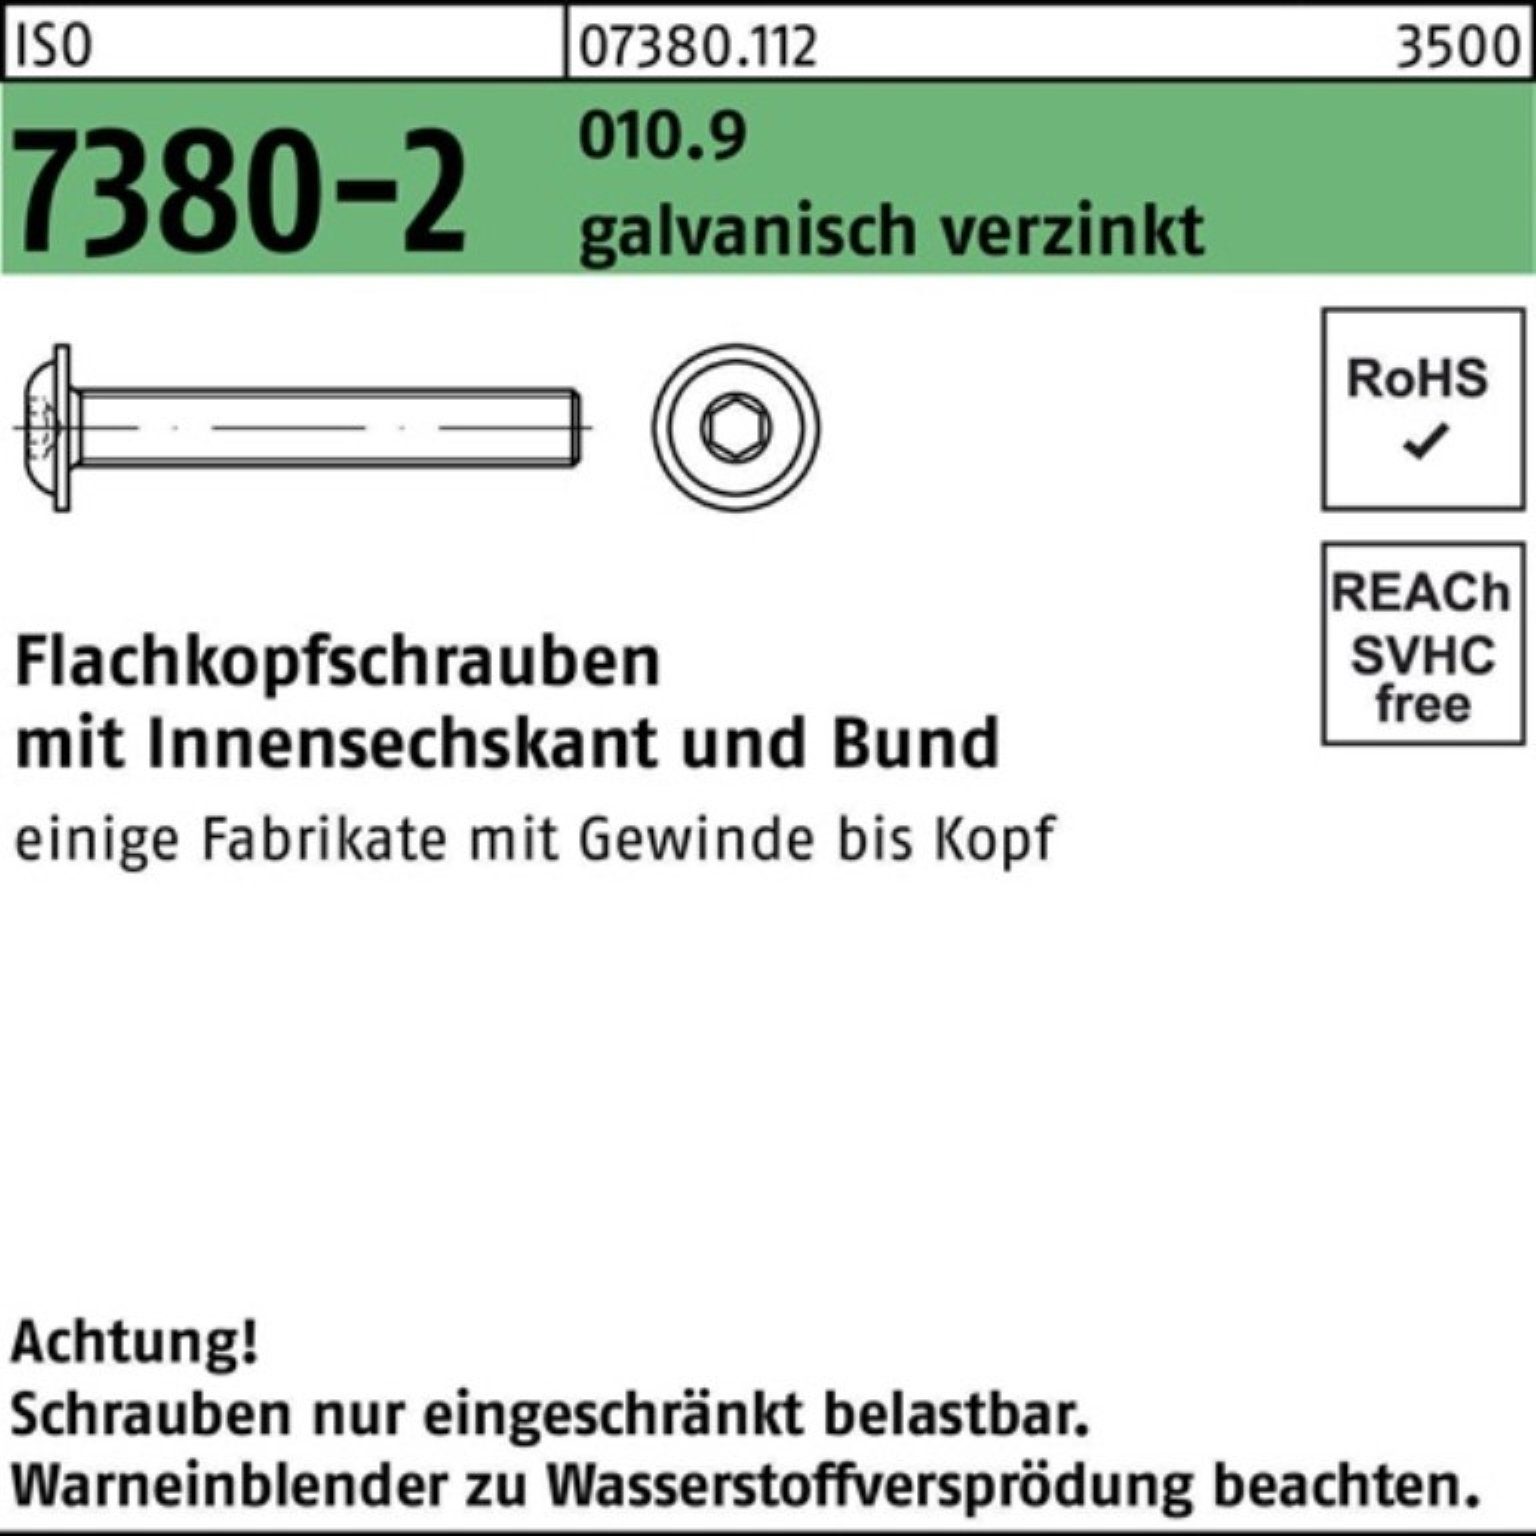 Reyher Schraube 500er Pack Bund/Innen-6kt Flachkopfschraube M3x6 7380-2 ISO 010.9 galv